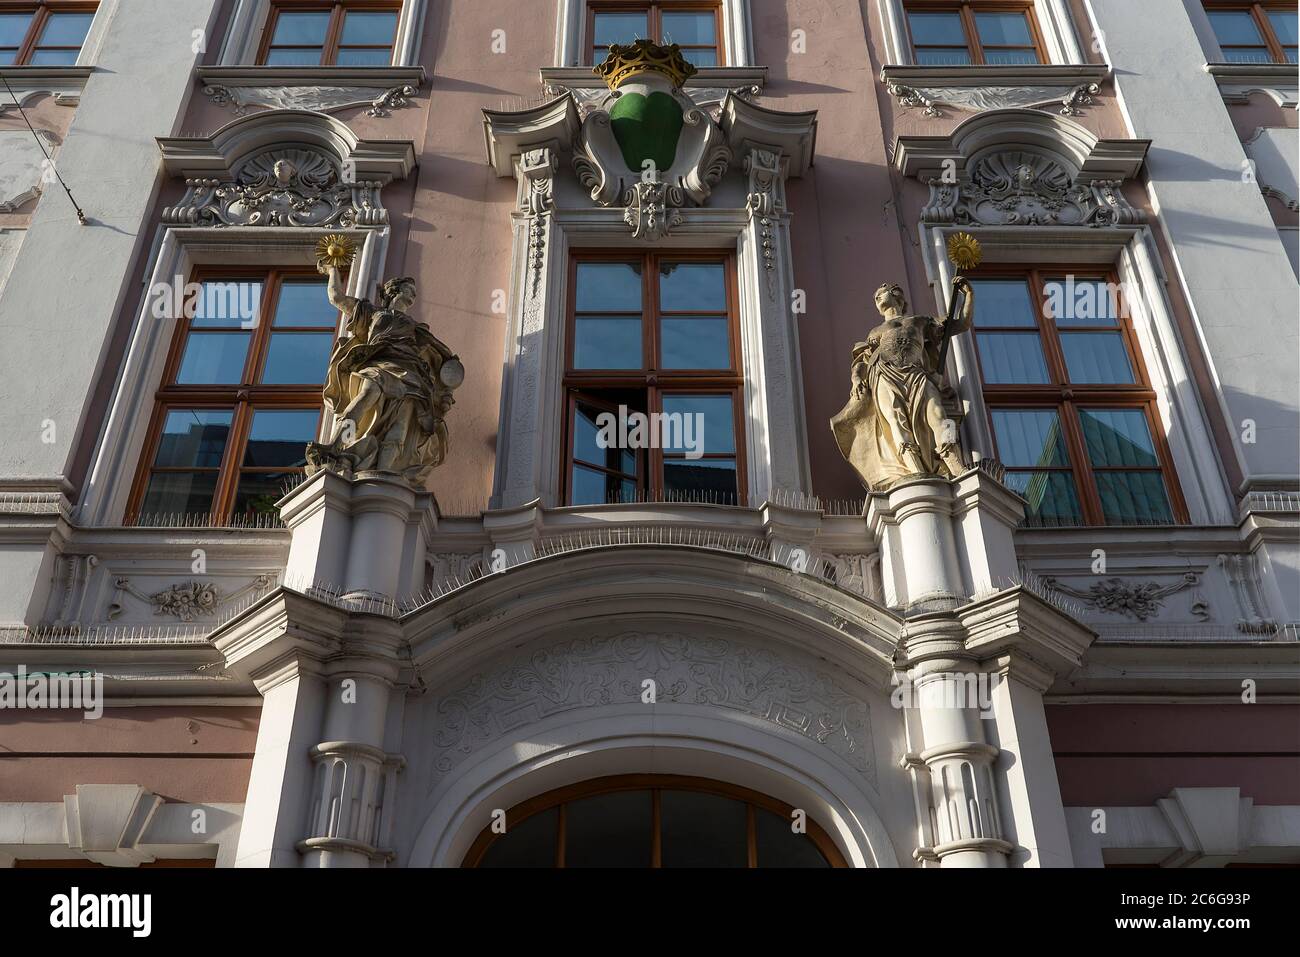 Portal de entrada, Casa Hartmann, edificio tipo palacio alrededor de 1720, portal con dos figuras, la verdad terrenal y divina, Bautzen, Alta Lusatia Foto de stock